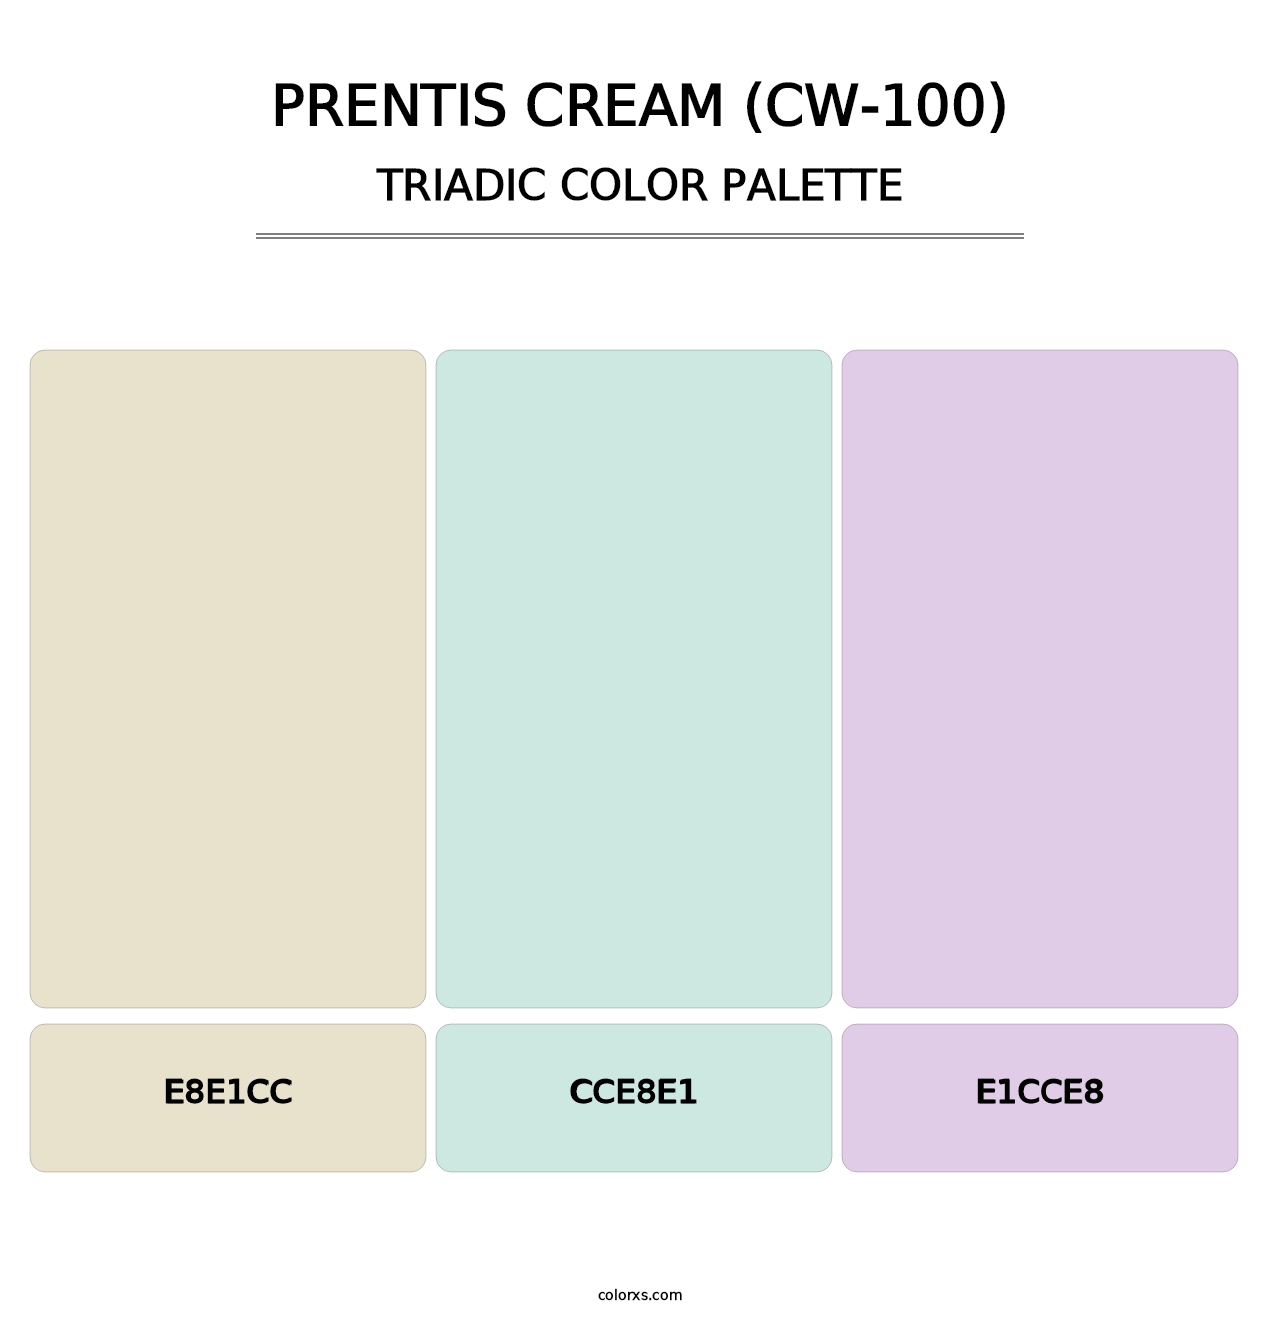 Prentis Cream (CW-100) - Triadic Color Palette